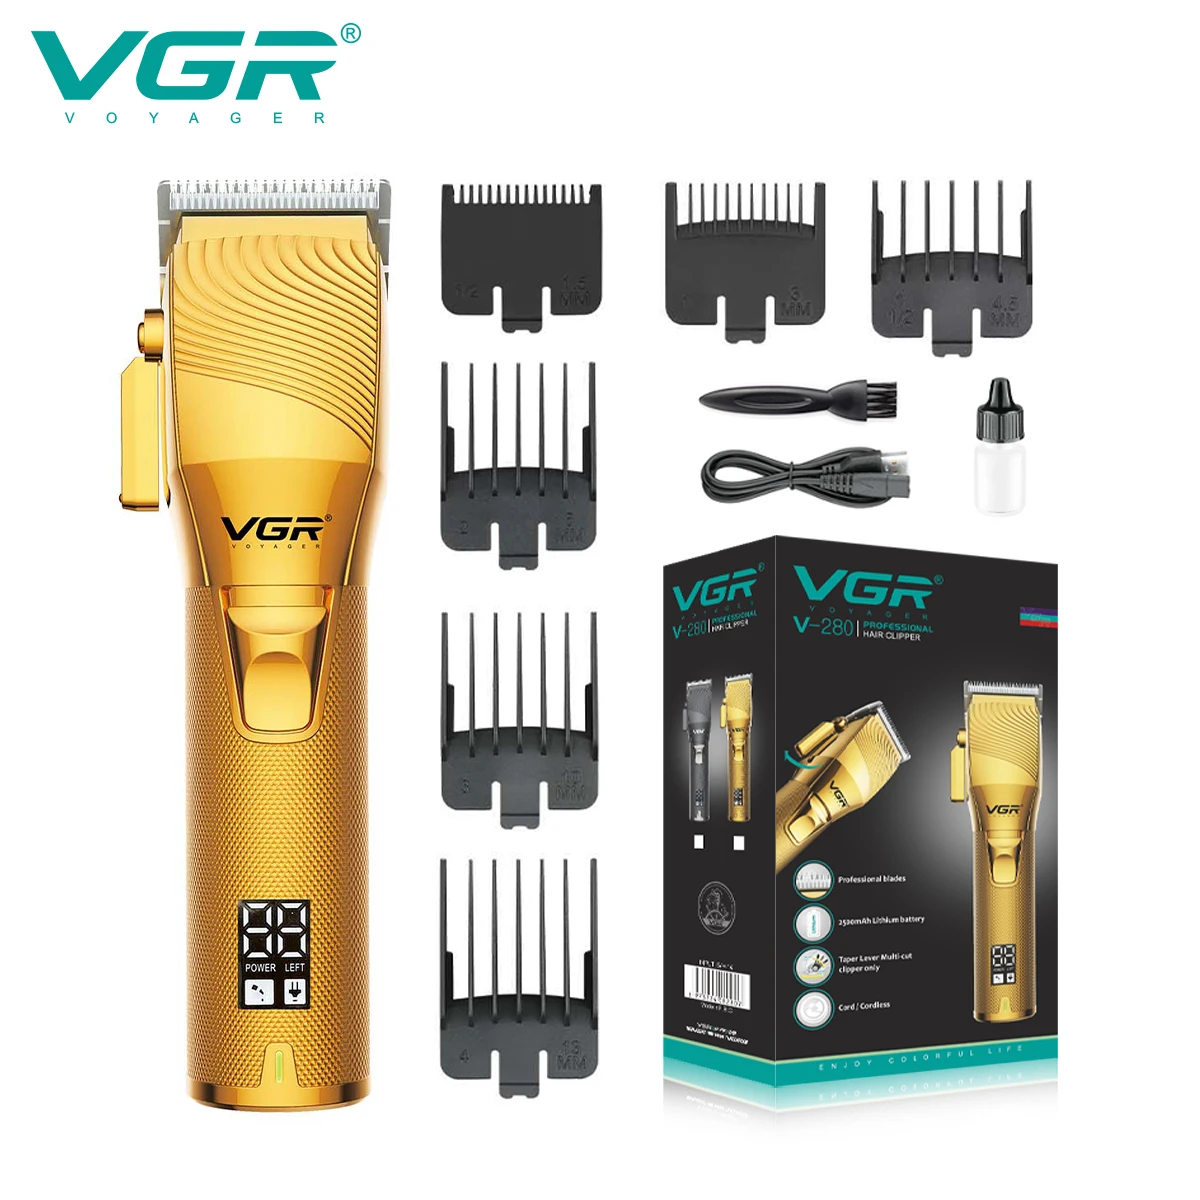 VGR Машинка для стрижки волос Профессиональная Машинка Для Стрижки Волос Беспроводной Триммер для волос Перезаряжаемая Парикмахерская Регулируемая Машинка для стрижки волос для мужчин V-280